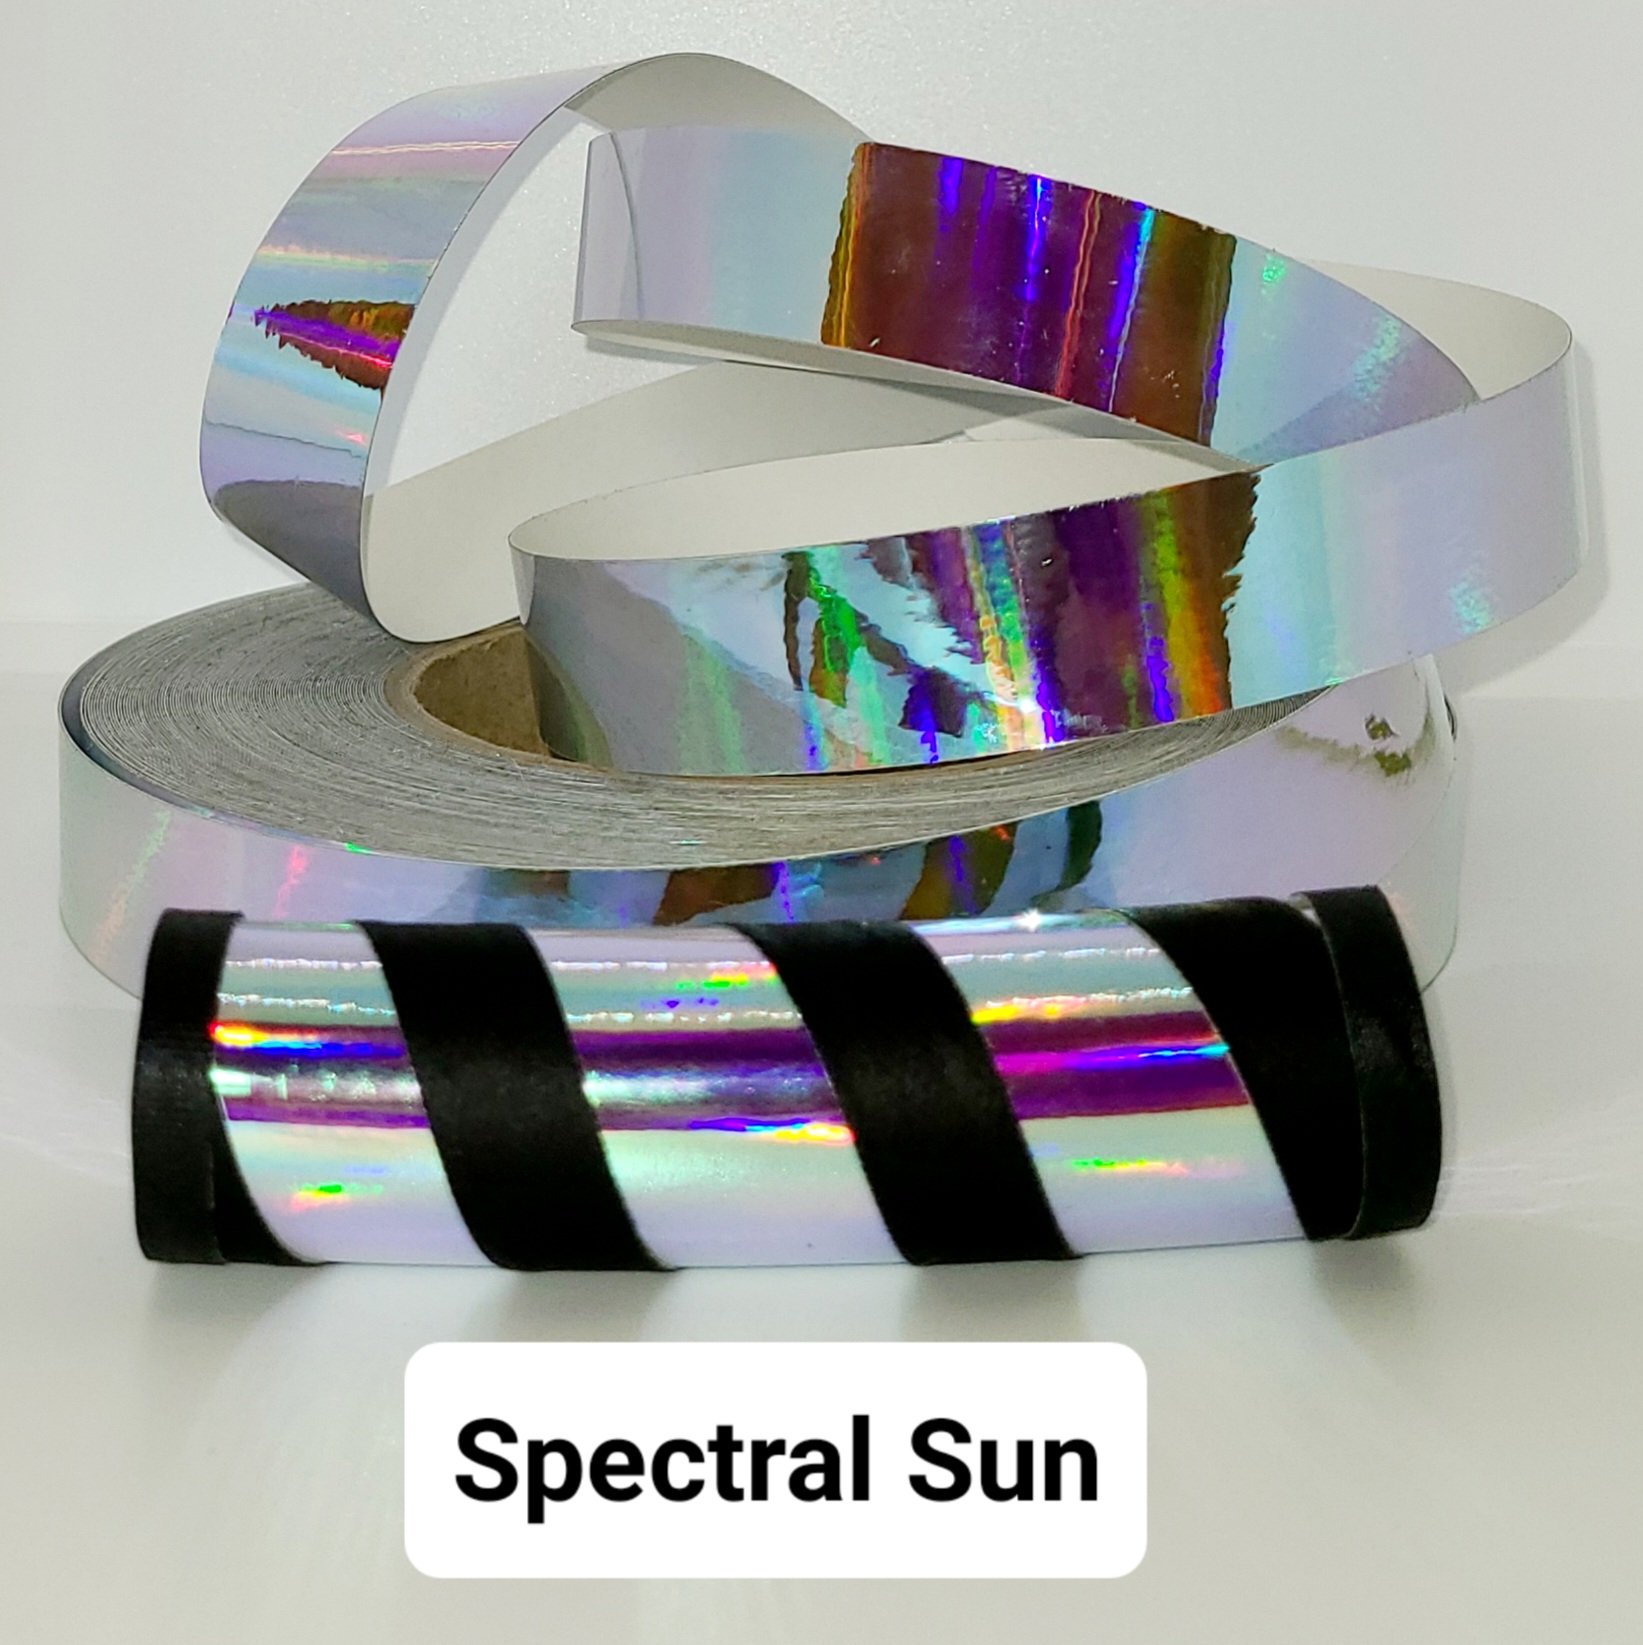 Spectral Sun